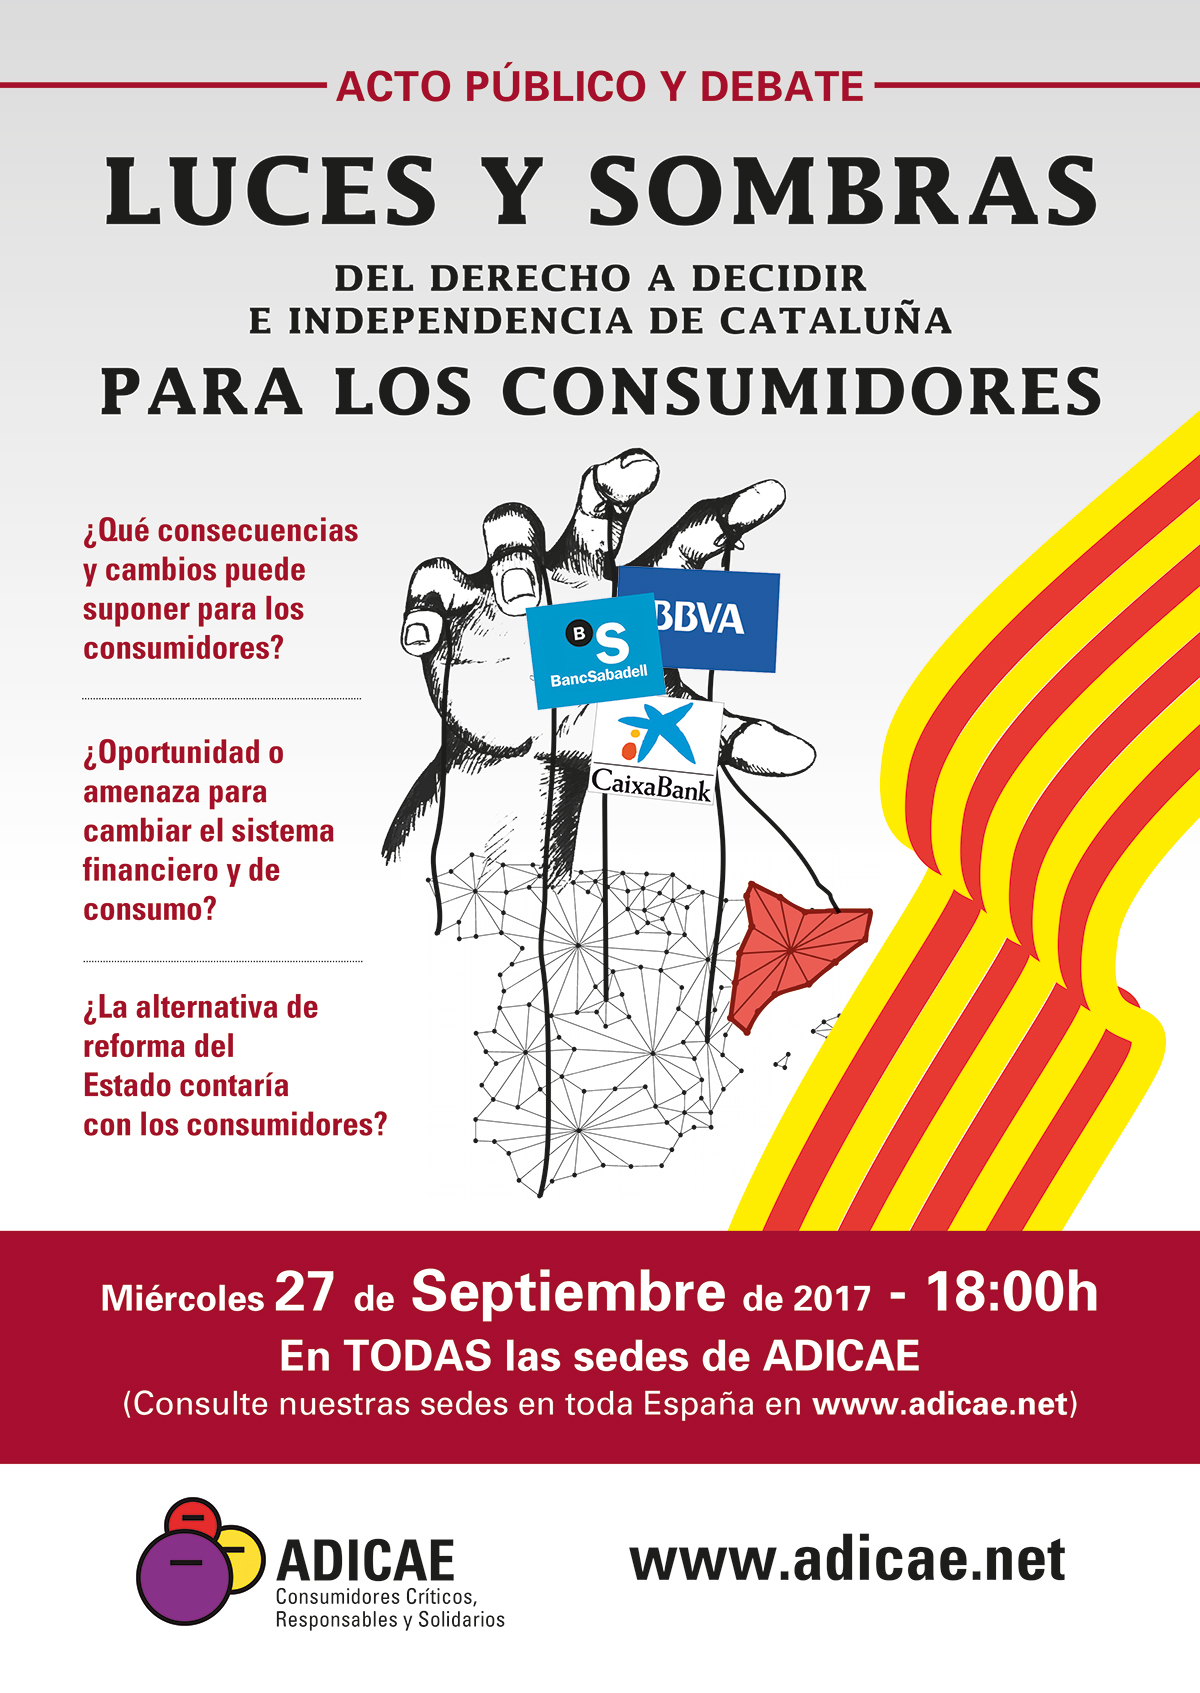 Acto Público y Debate: Luces y Sombras del Derecho a Decidir y la Independencia de Cataluña para los consumidores